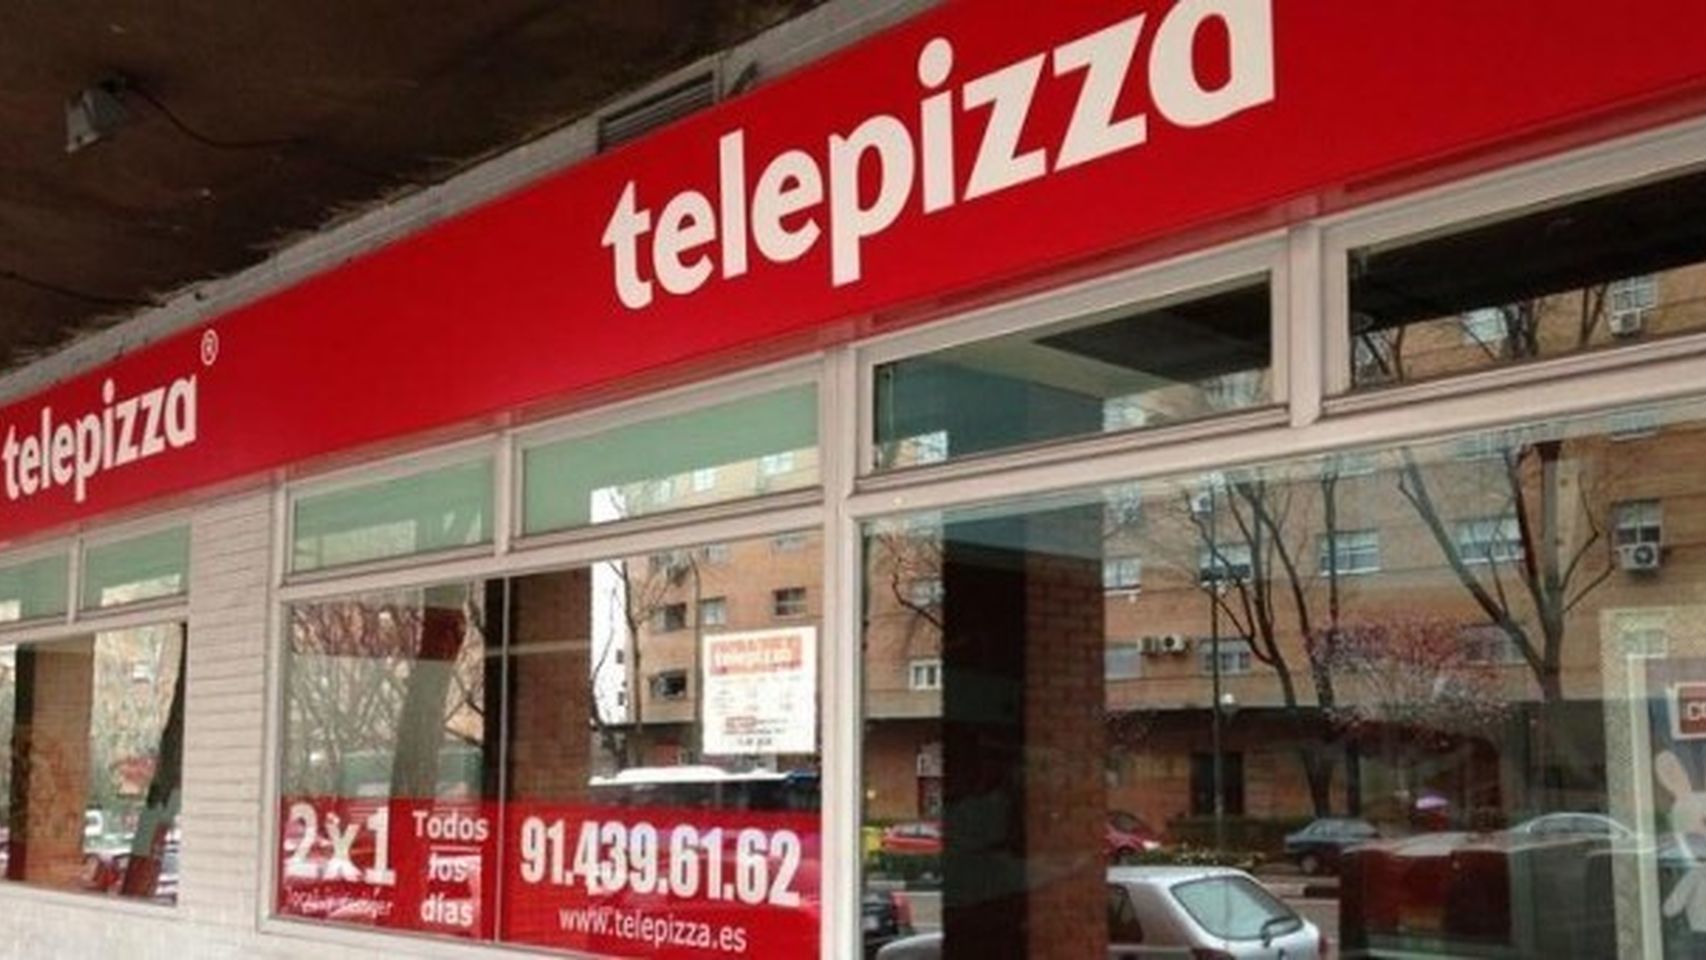 Escaparate de un establecimiento de Telepizza.